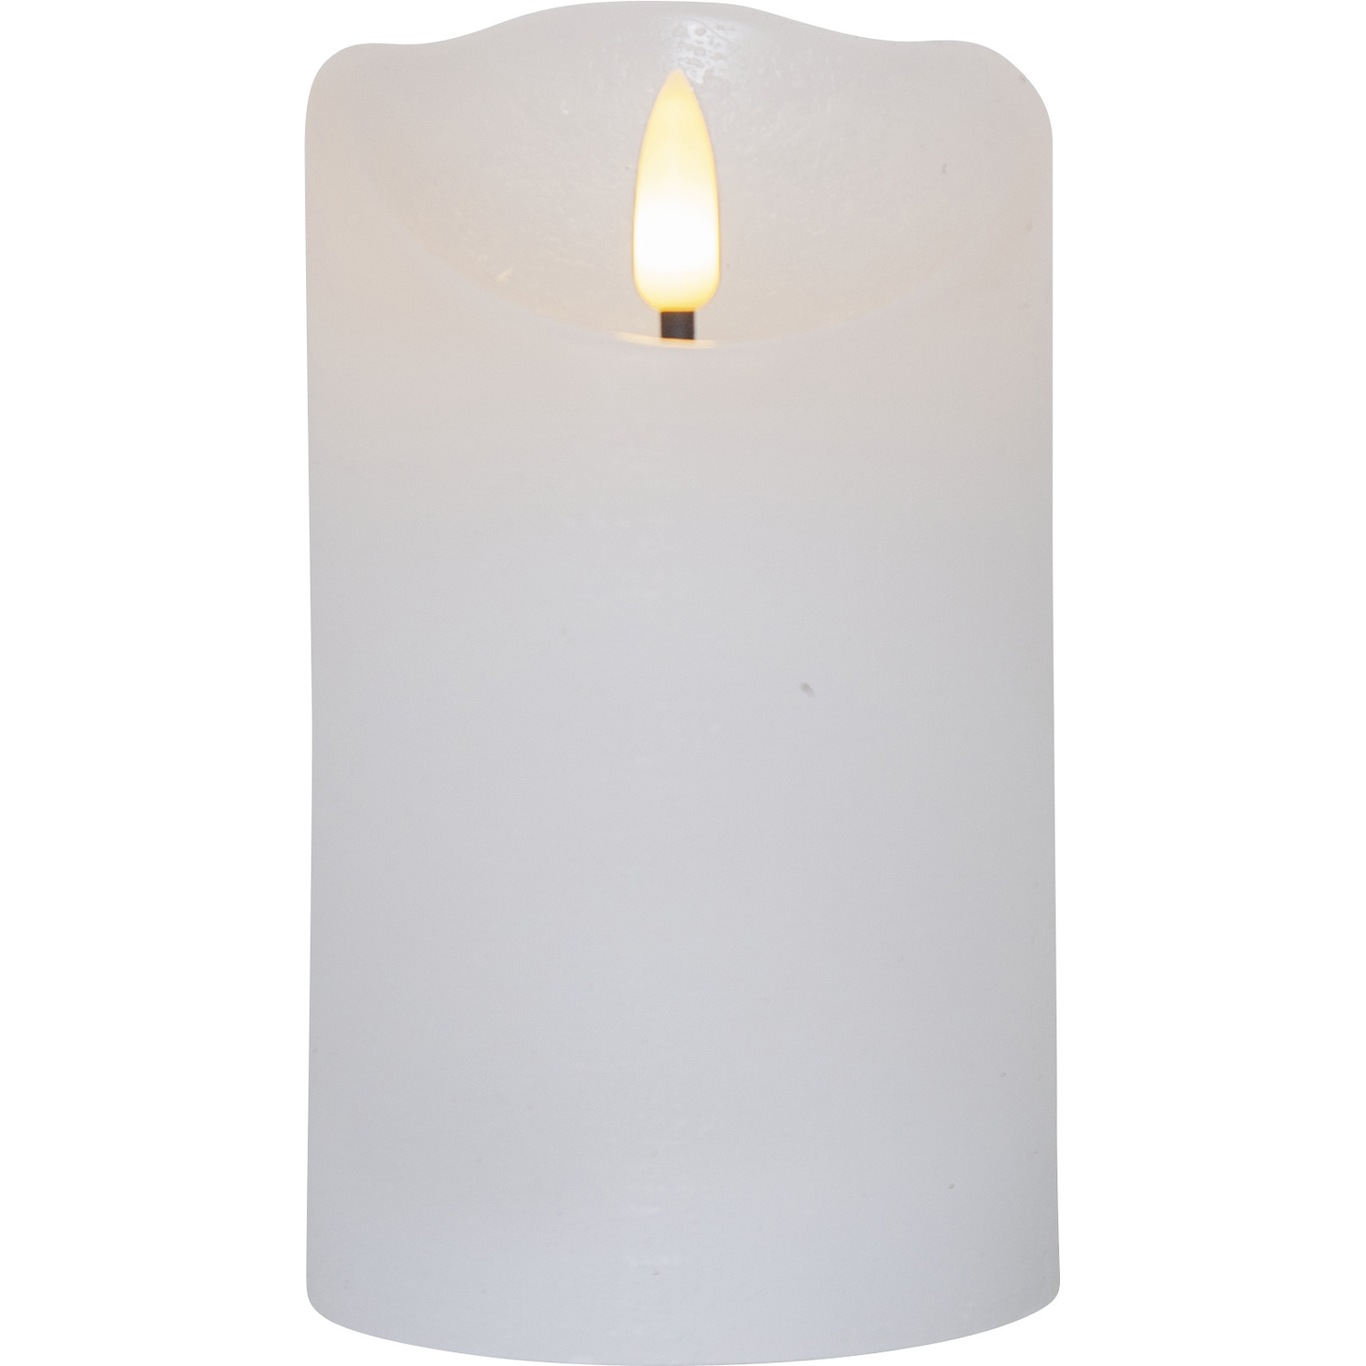 Flamme Rustic LED Pöytäkynttilä Valkoinen, 12 cm